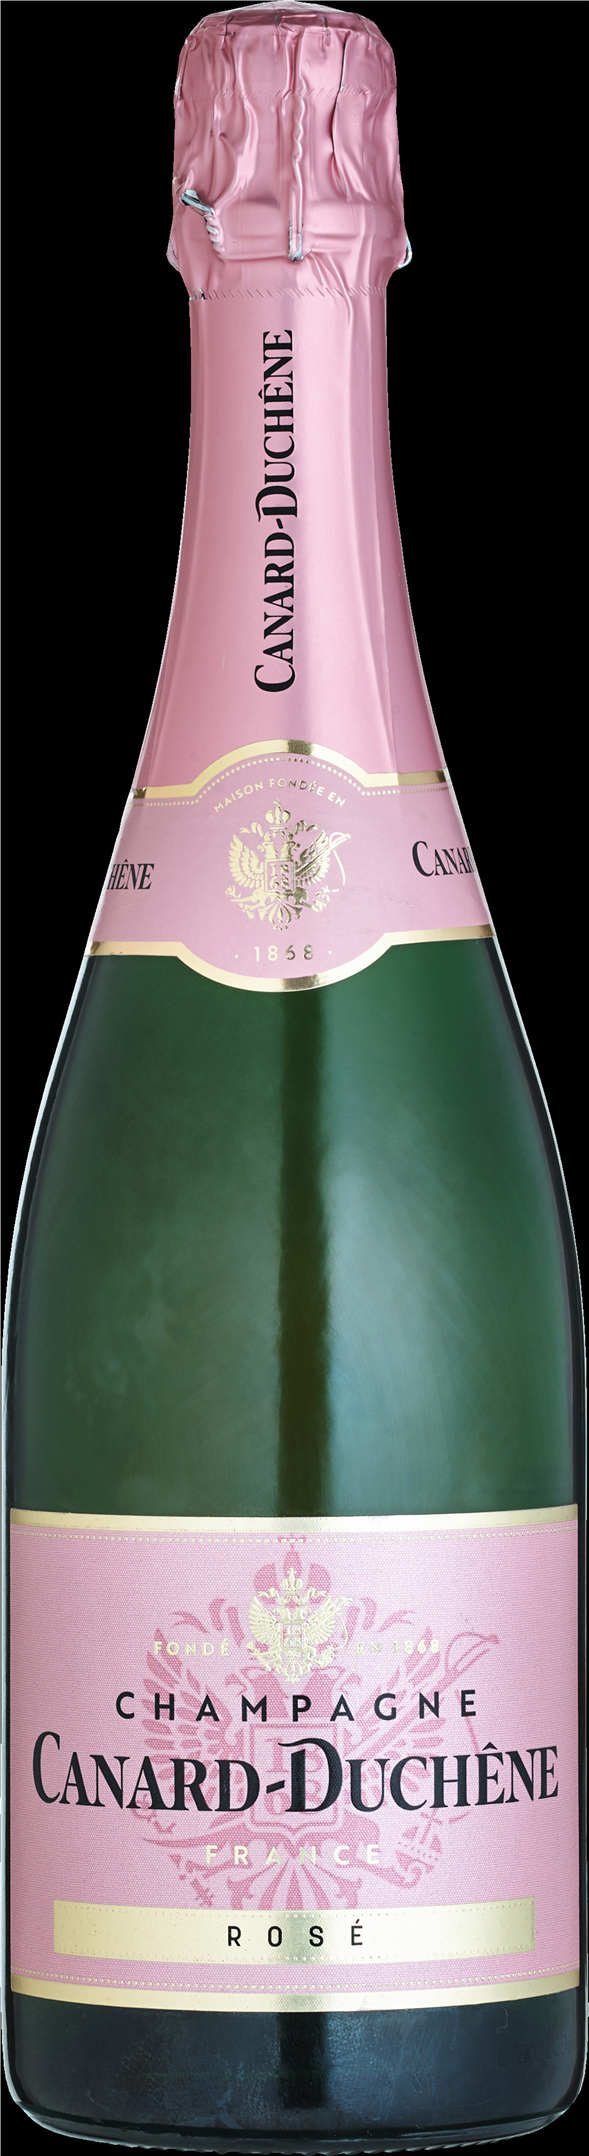 Canard-Duchene Brut Rose, Champagne Frankrig